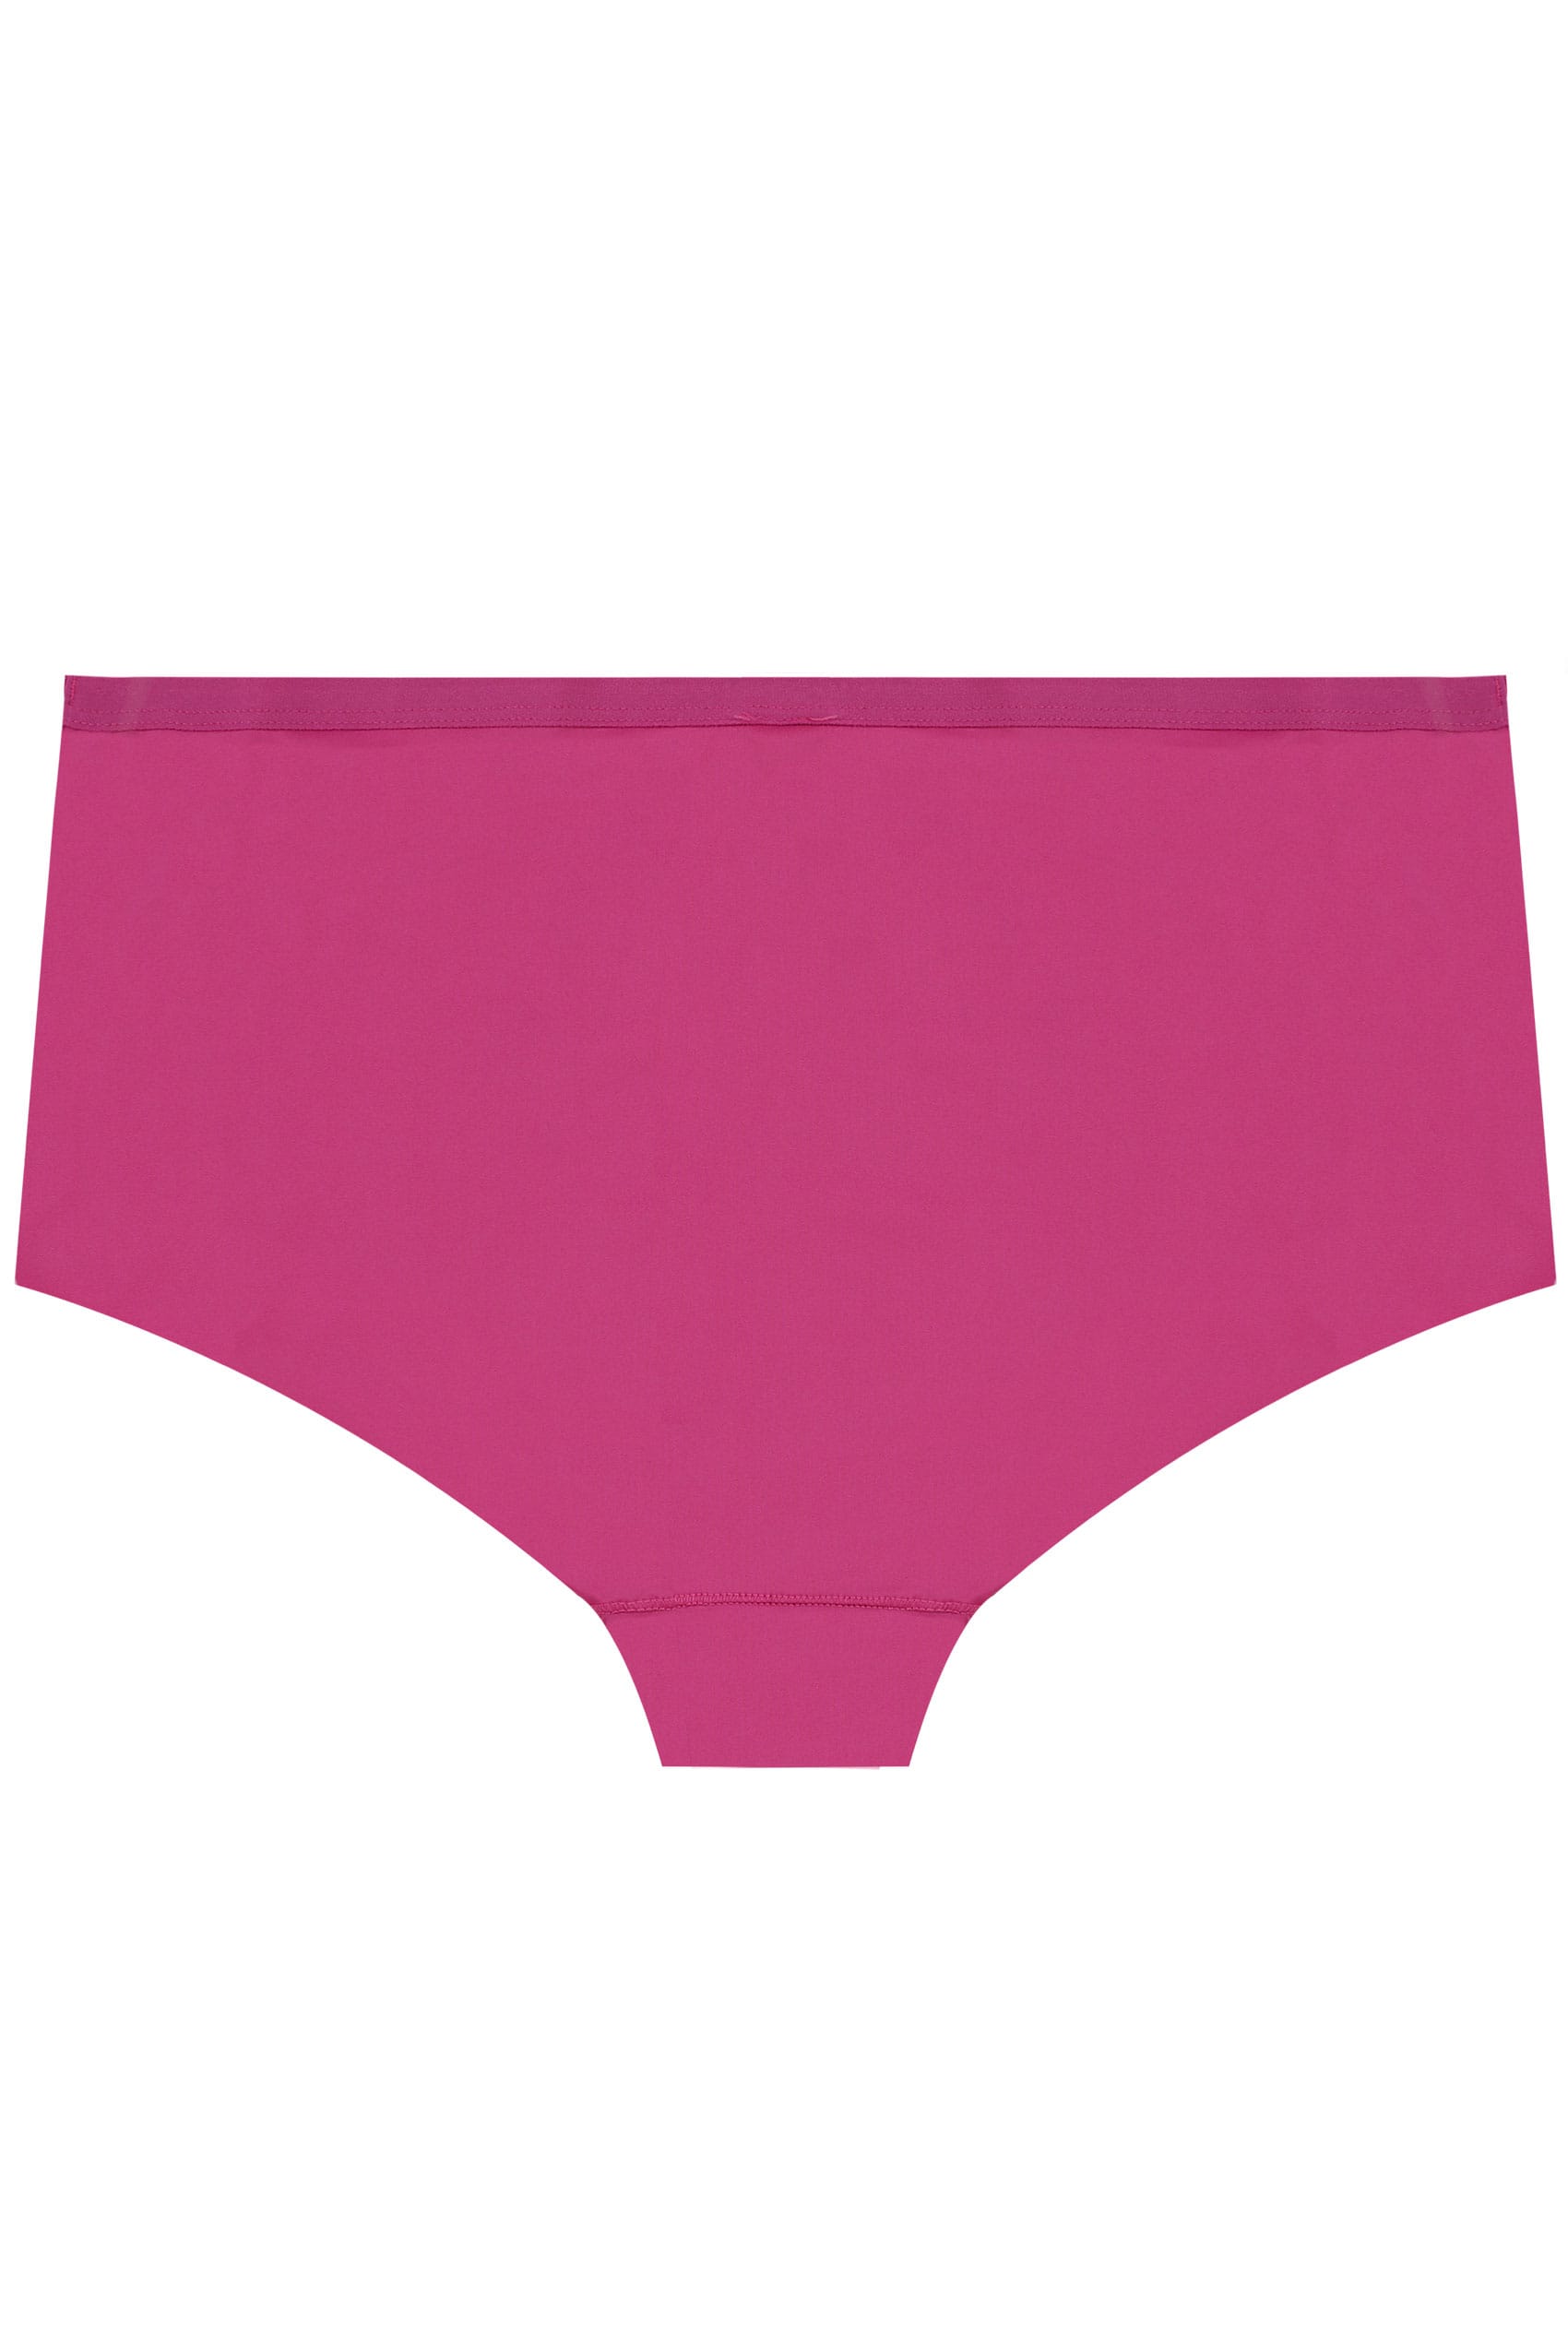 3 PACK Black, Pink & Purple No VPL Shorts With Lace Trim, Plus size 16 ...